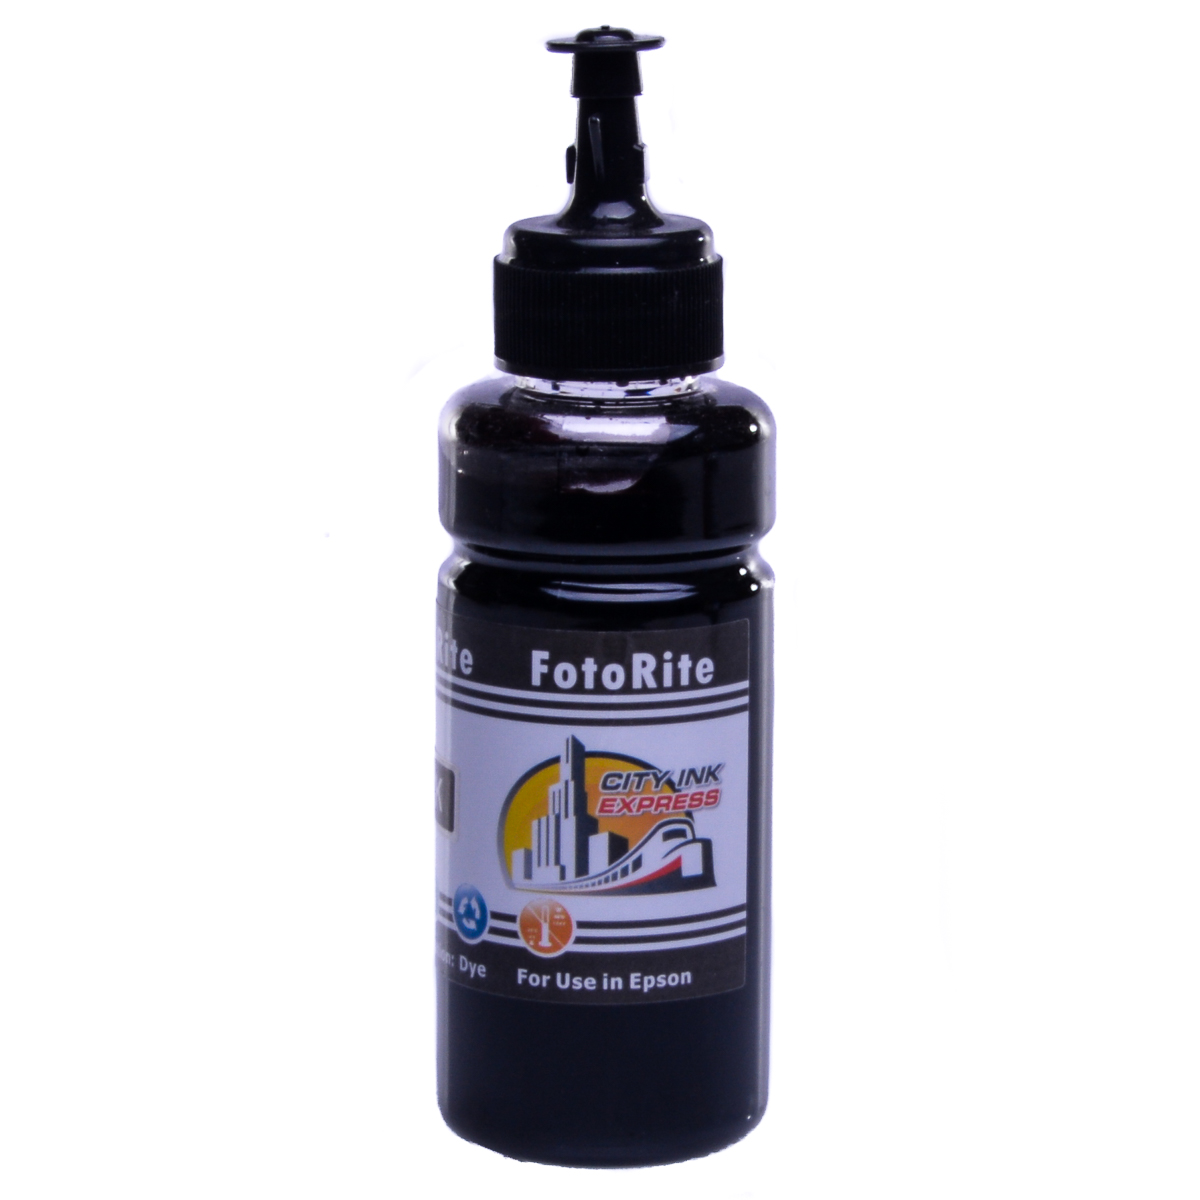 Cheap Black dye ink replaces Epson XP-15000 - 378 - C13T37814010